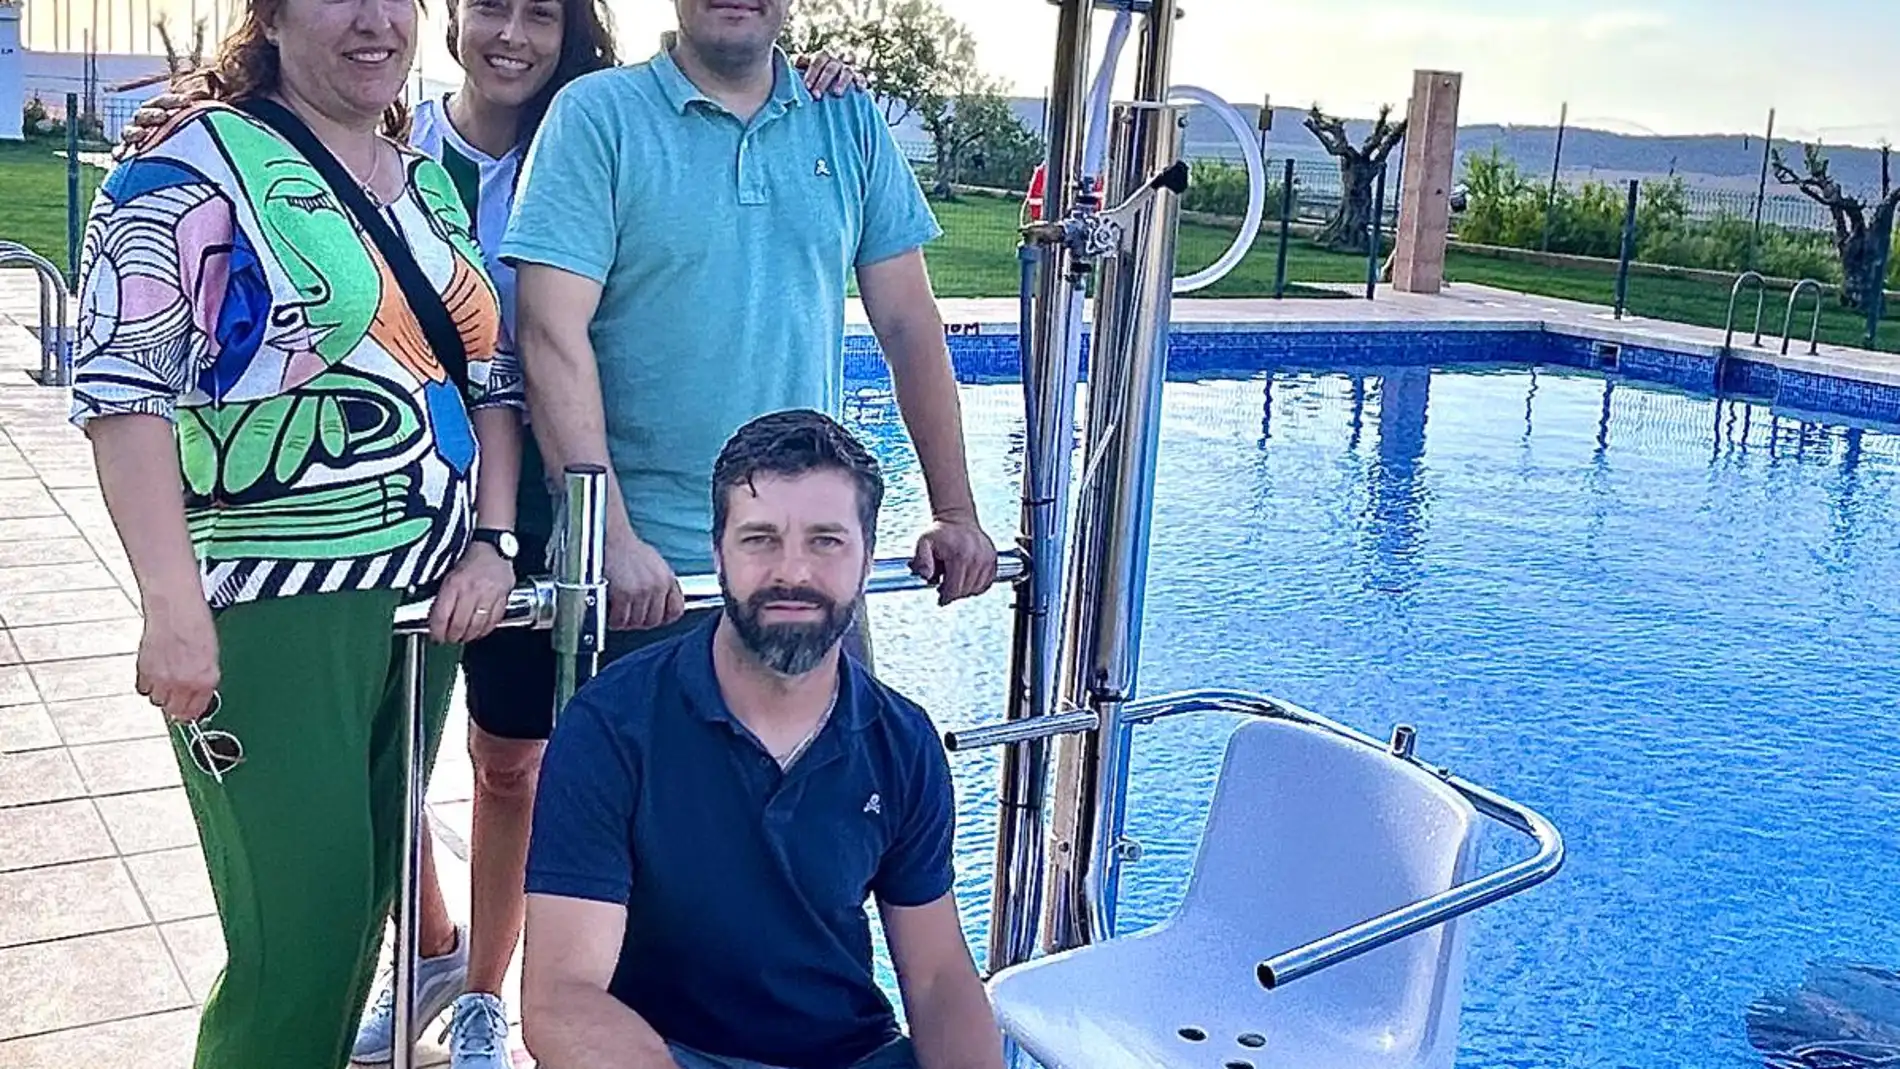 Carcelén ya puede disfrutar de una silla para personas de movilidad reducida en la piscina municipal